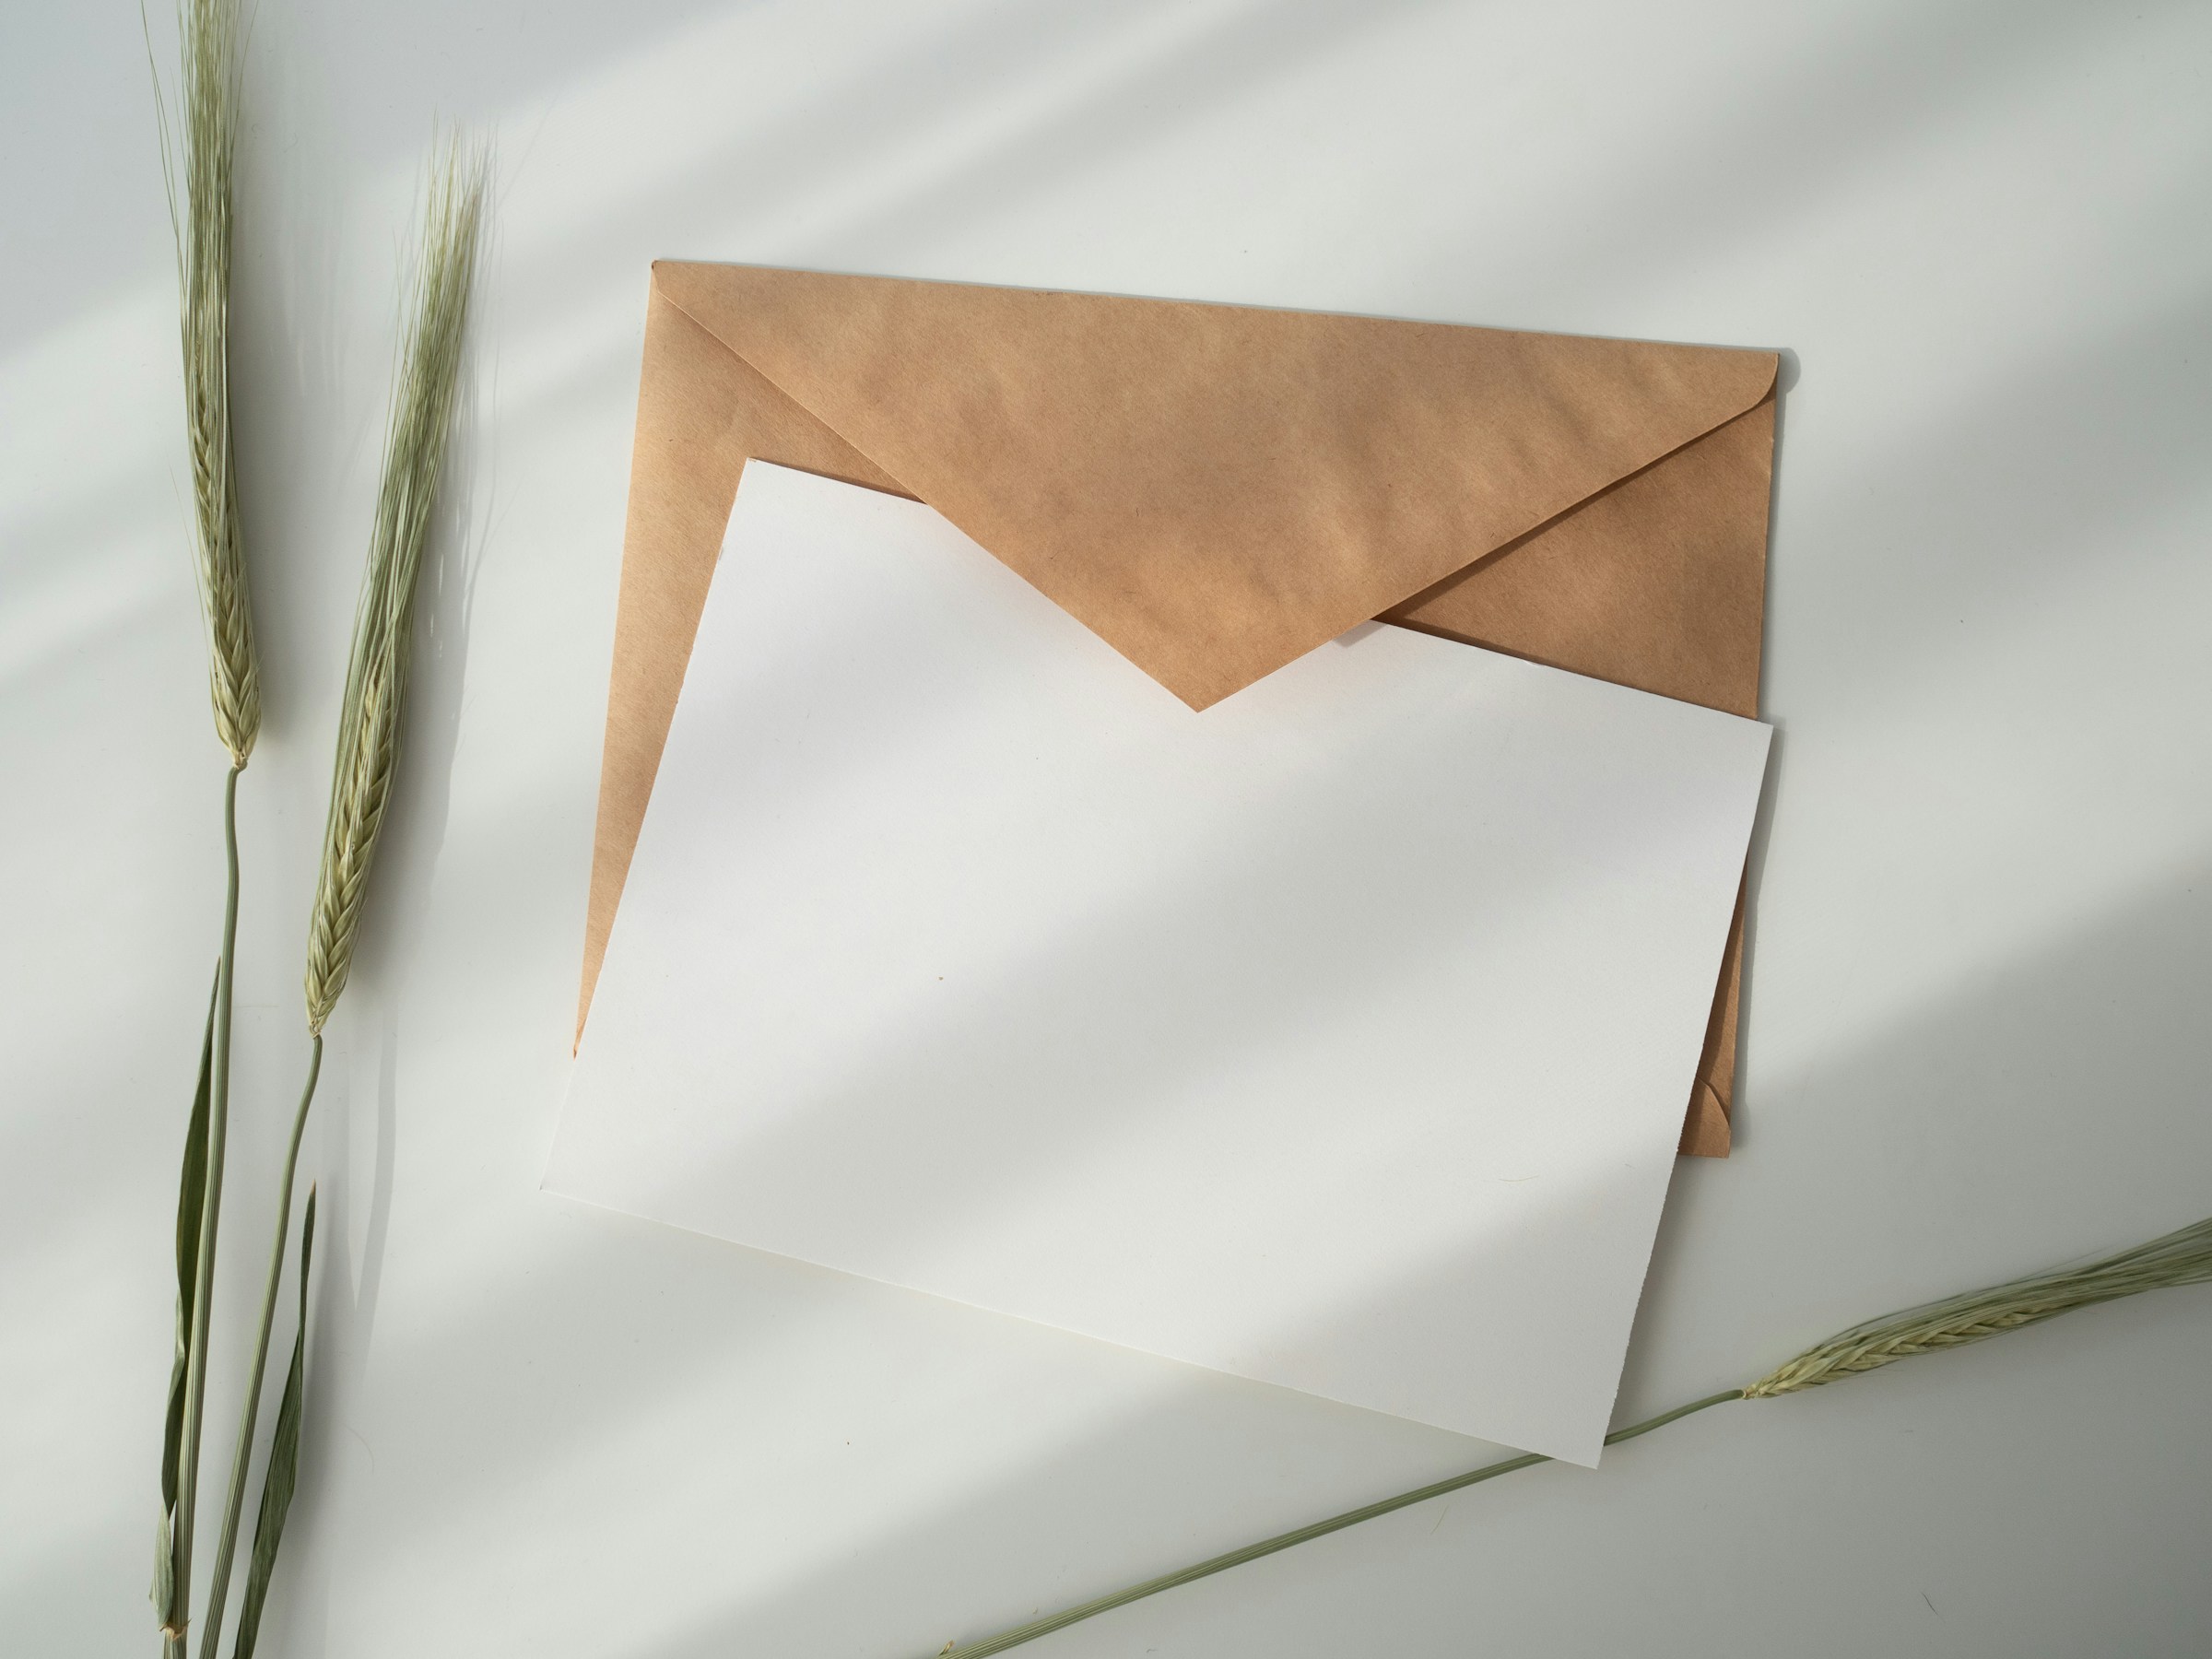 Brauner Umschlag mit weißem Papier | Quelle: Unsplash